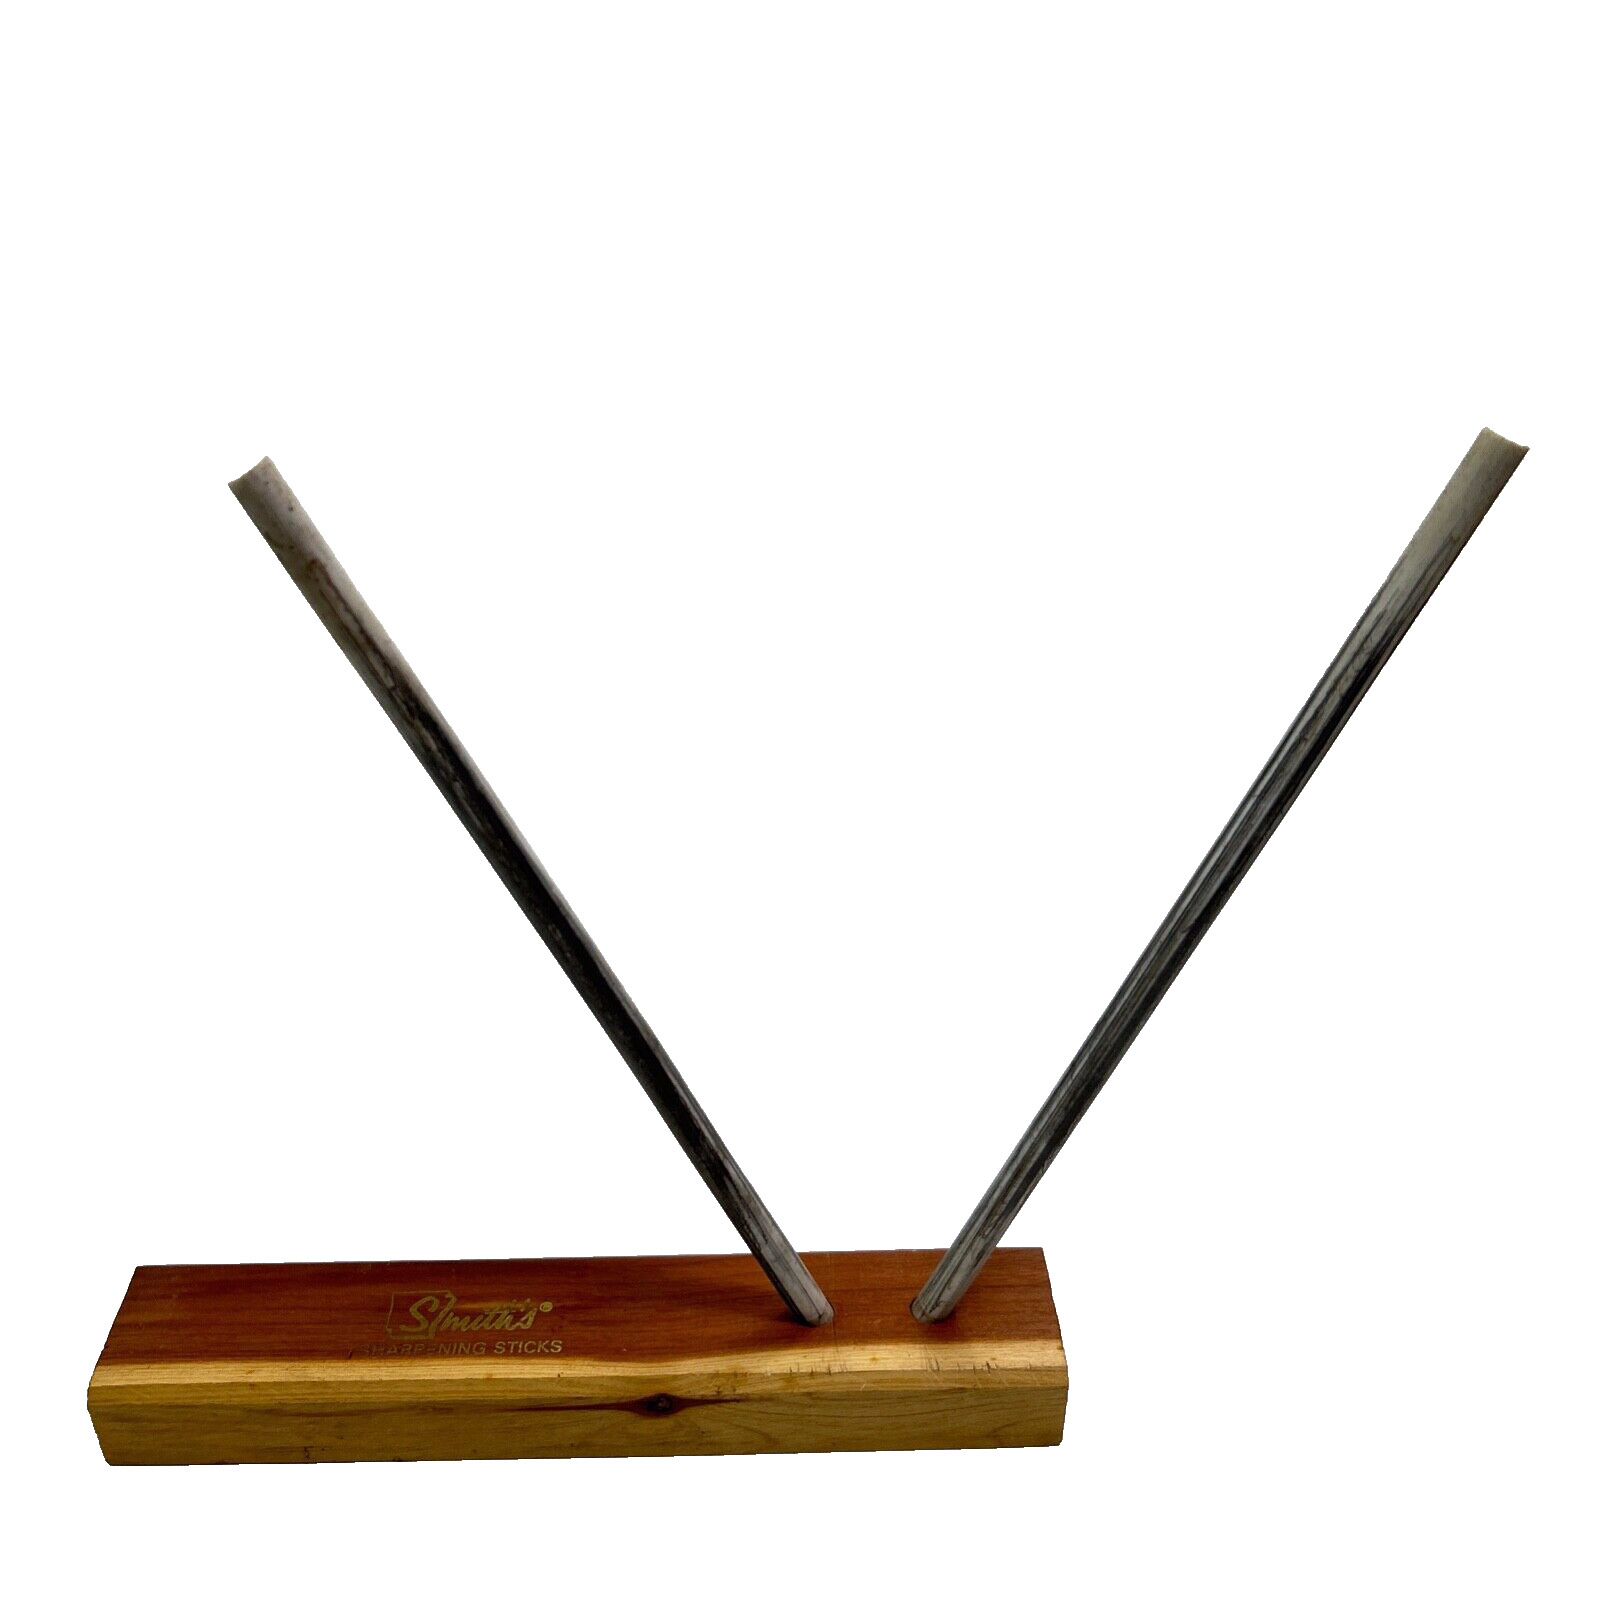 Vintage Smith\'s knife sharpener sharpening honing sticks rods wood base